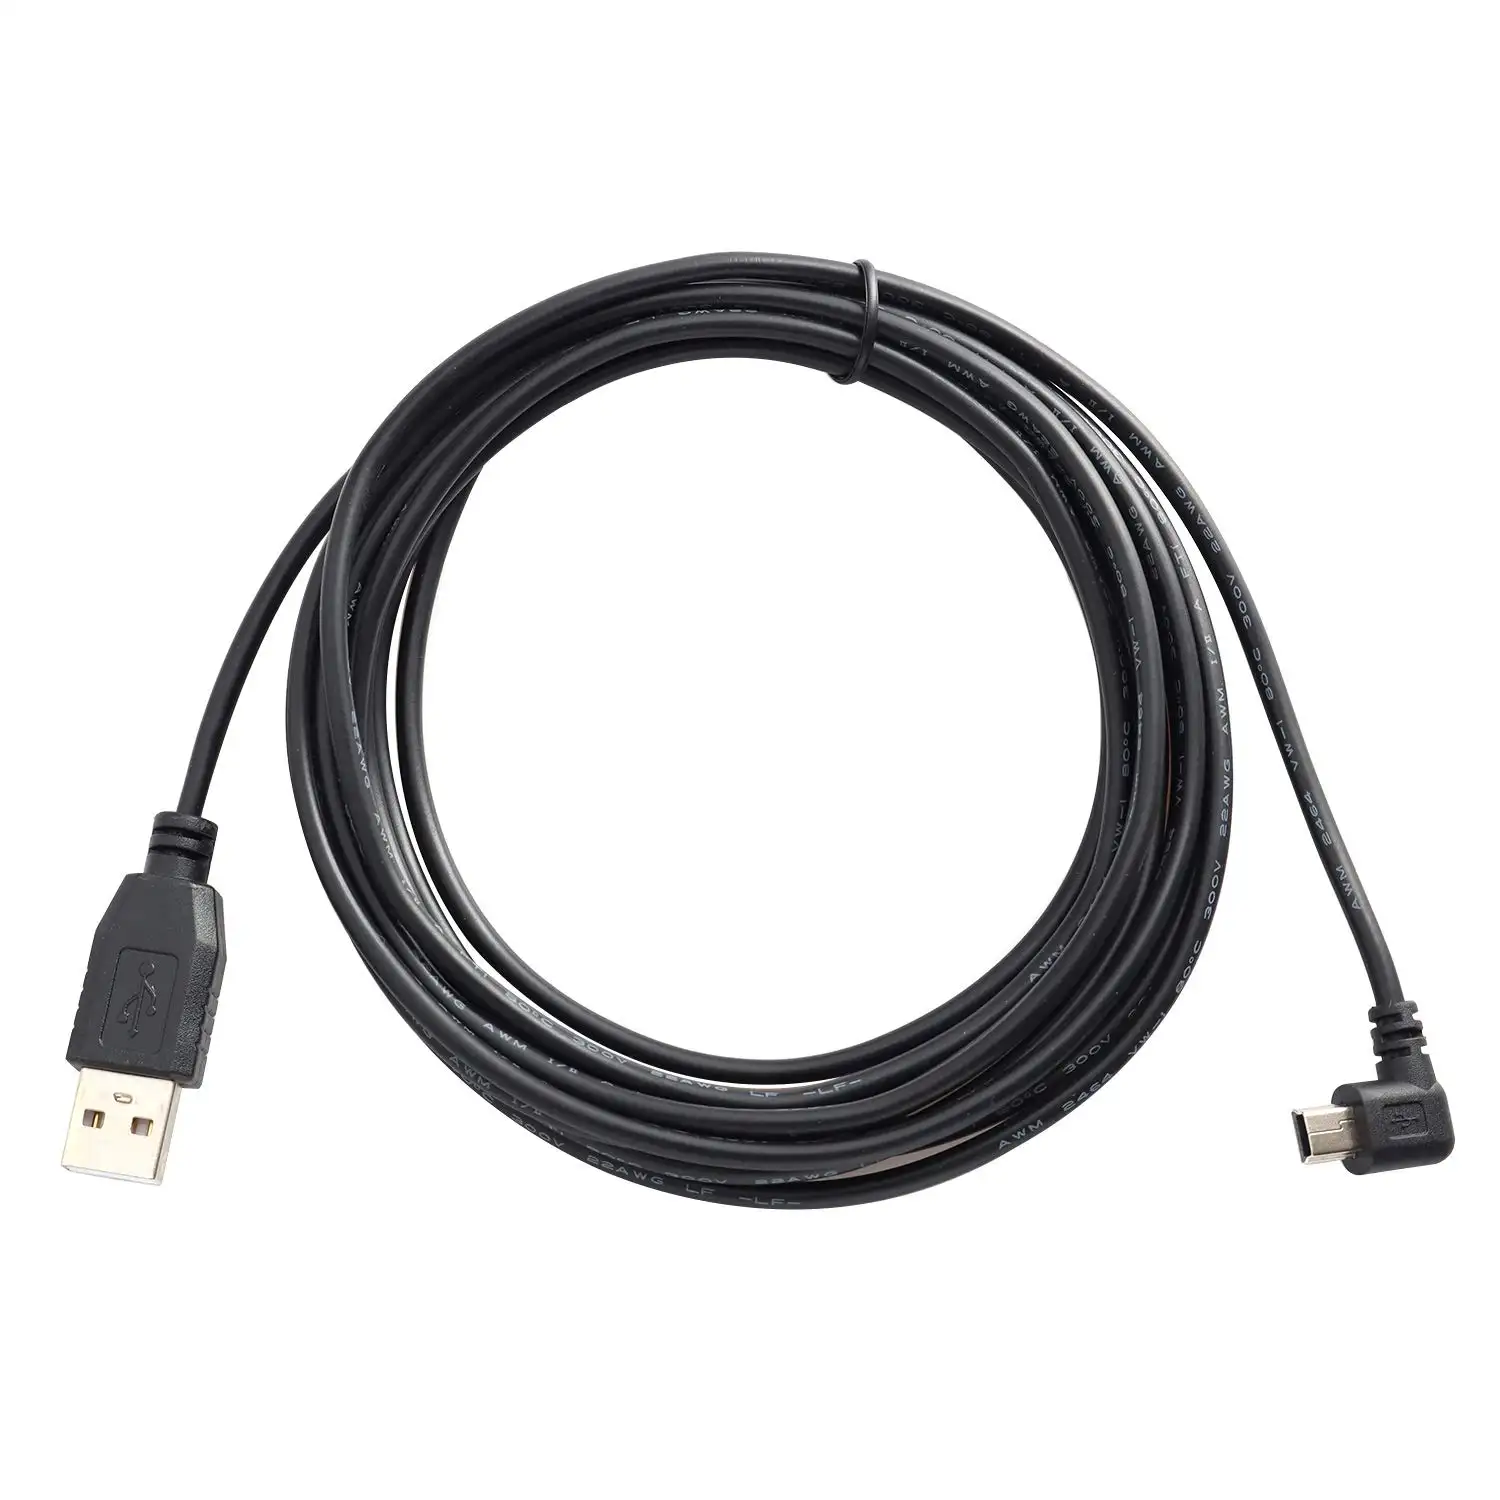 Kabel adaptor pengisi daya kendaraan mobil, USB 2.0 tipe A Male ke USB Mini B